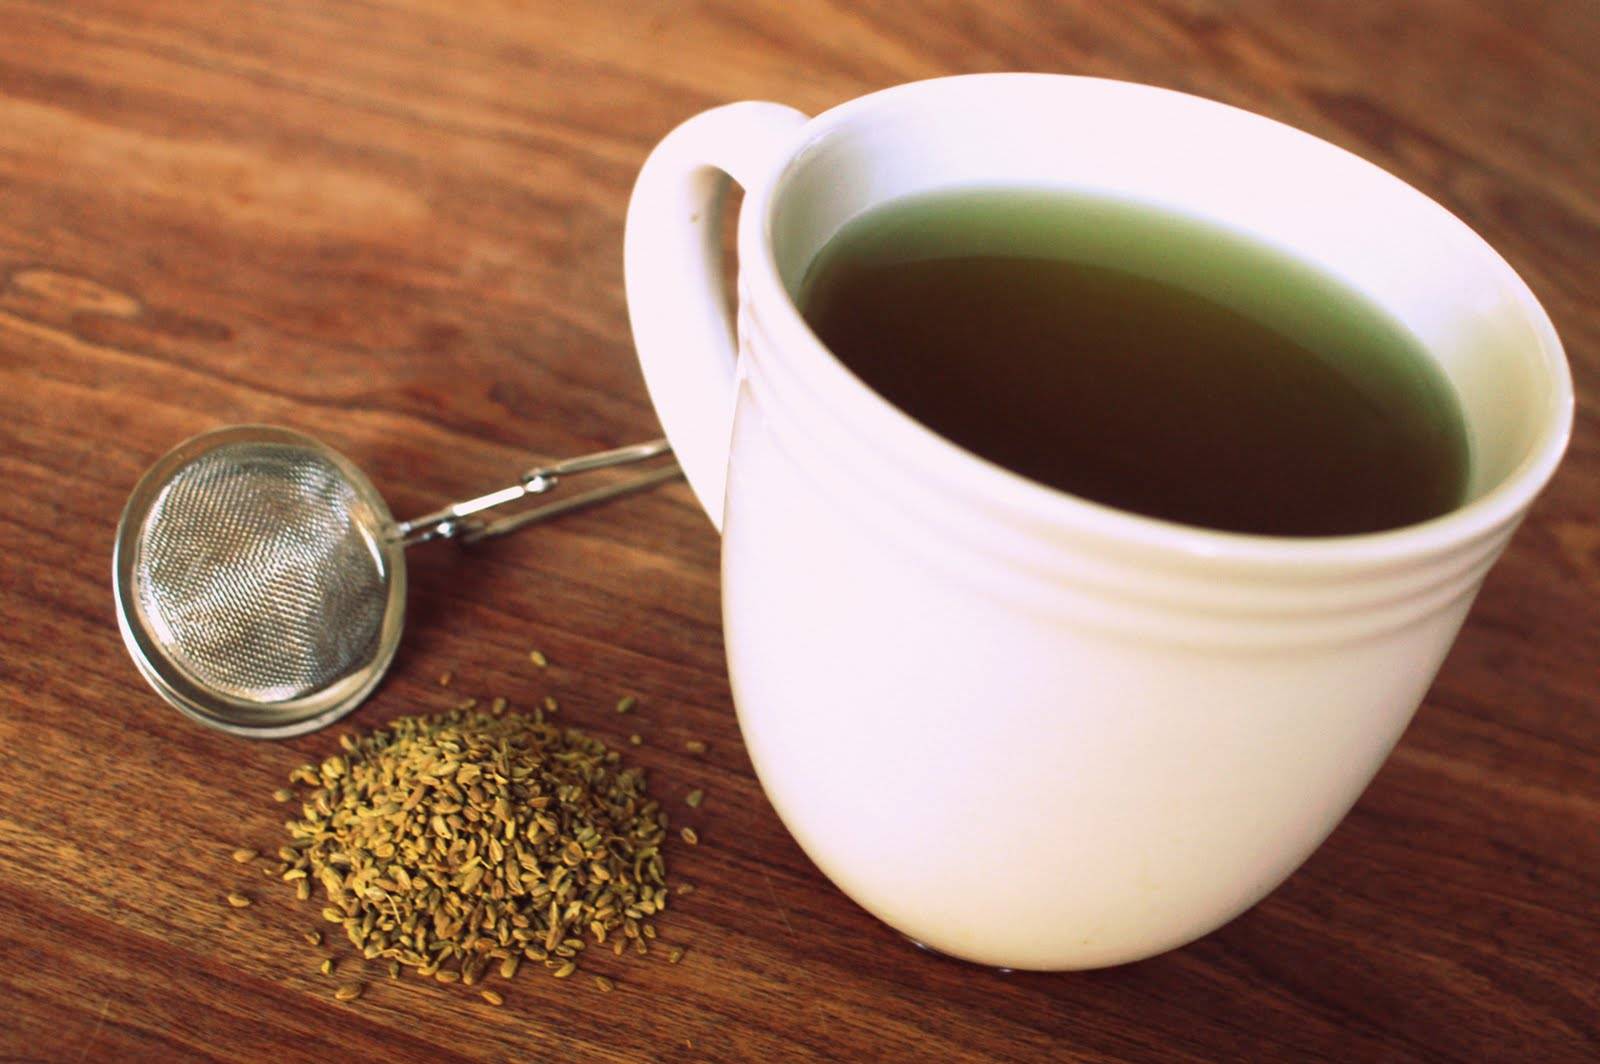 Анисовый чай: полезные свойства, вред и противопоказания. как приготовить напиток с анисом самостоятельно и что лучше использовать — семена или листья?